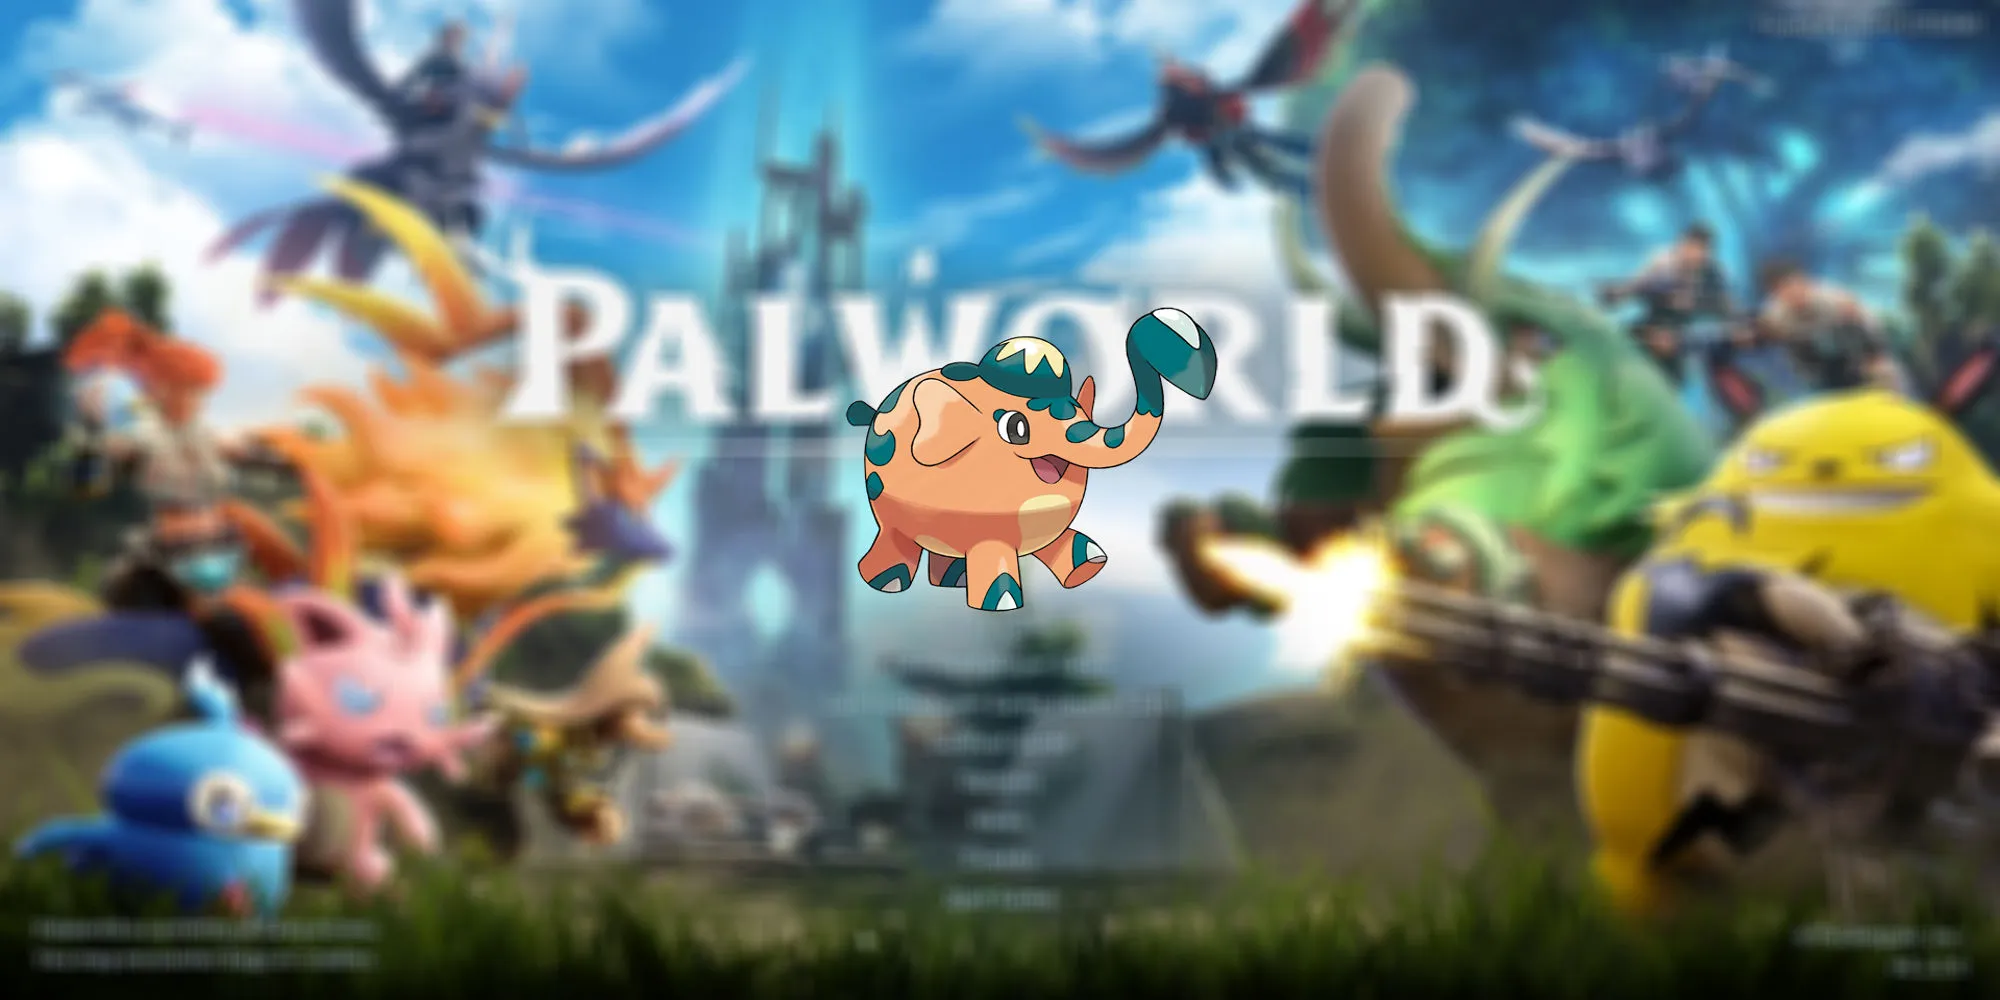 Куфант из Pokemon, потенциально подходящий для Palworld